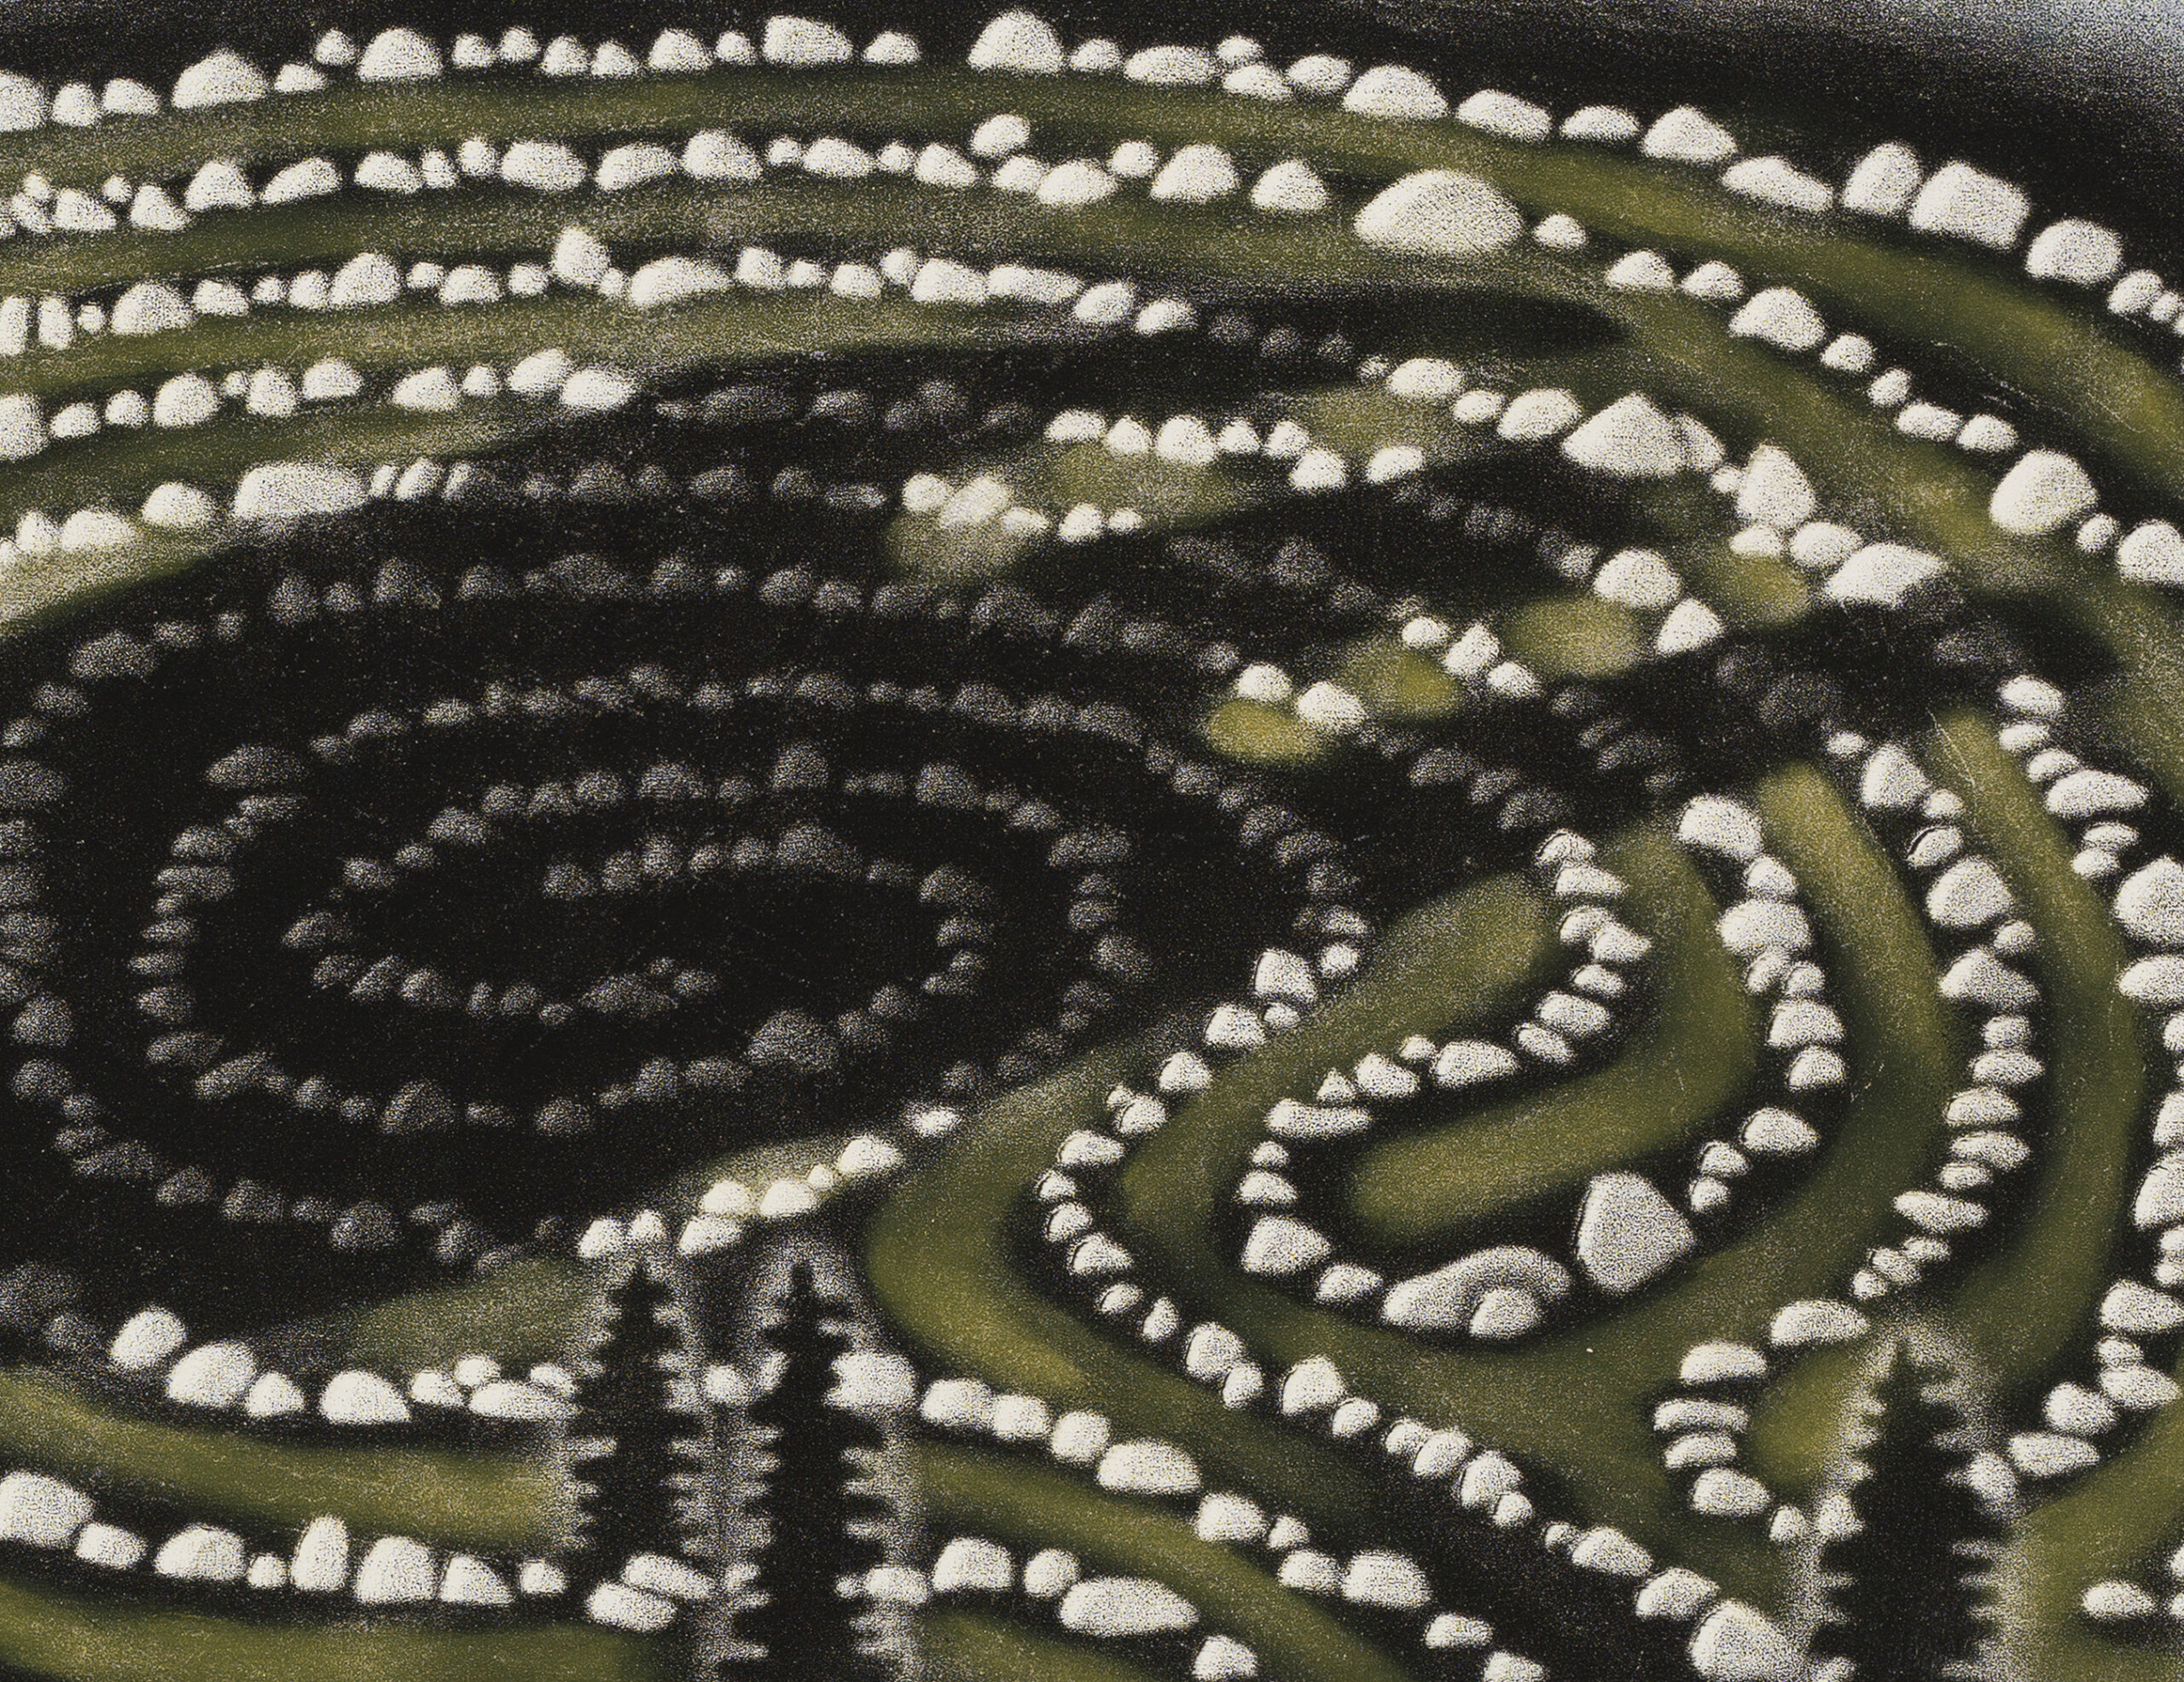 Kaljo Põllu “Saatus”, 1987. Plm 48 x 61,2 cm